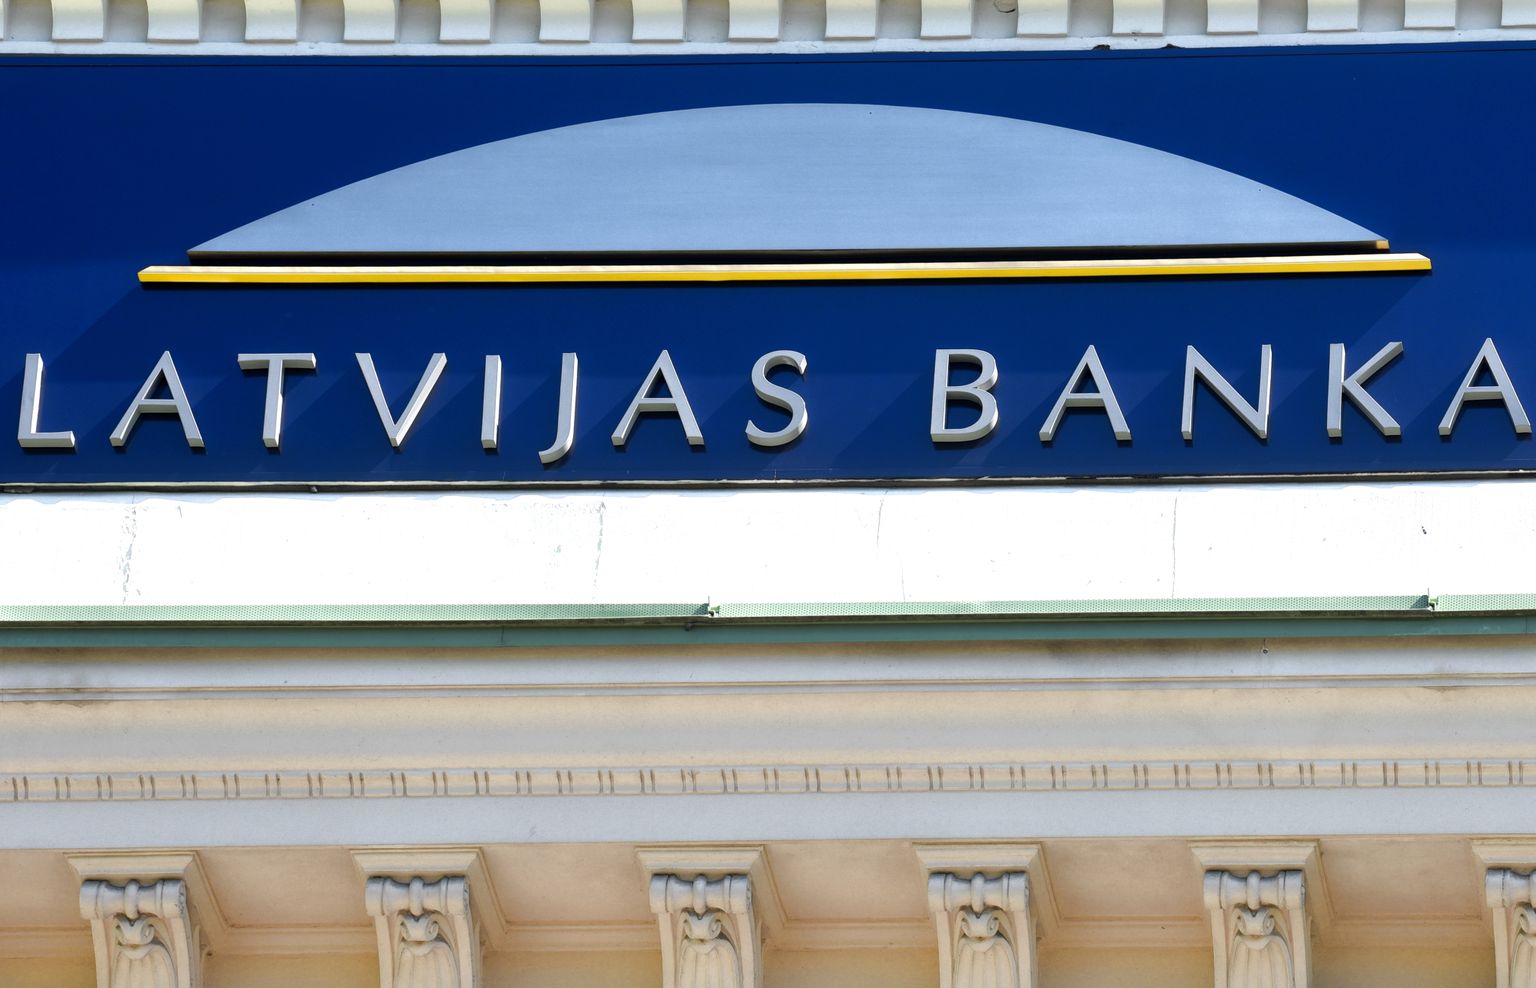 Latvijas bankas restaurētais uzraksts.